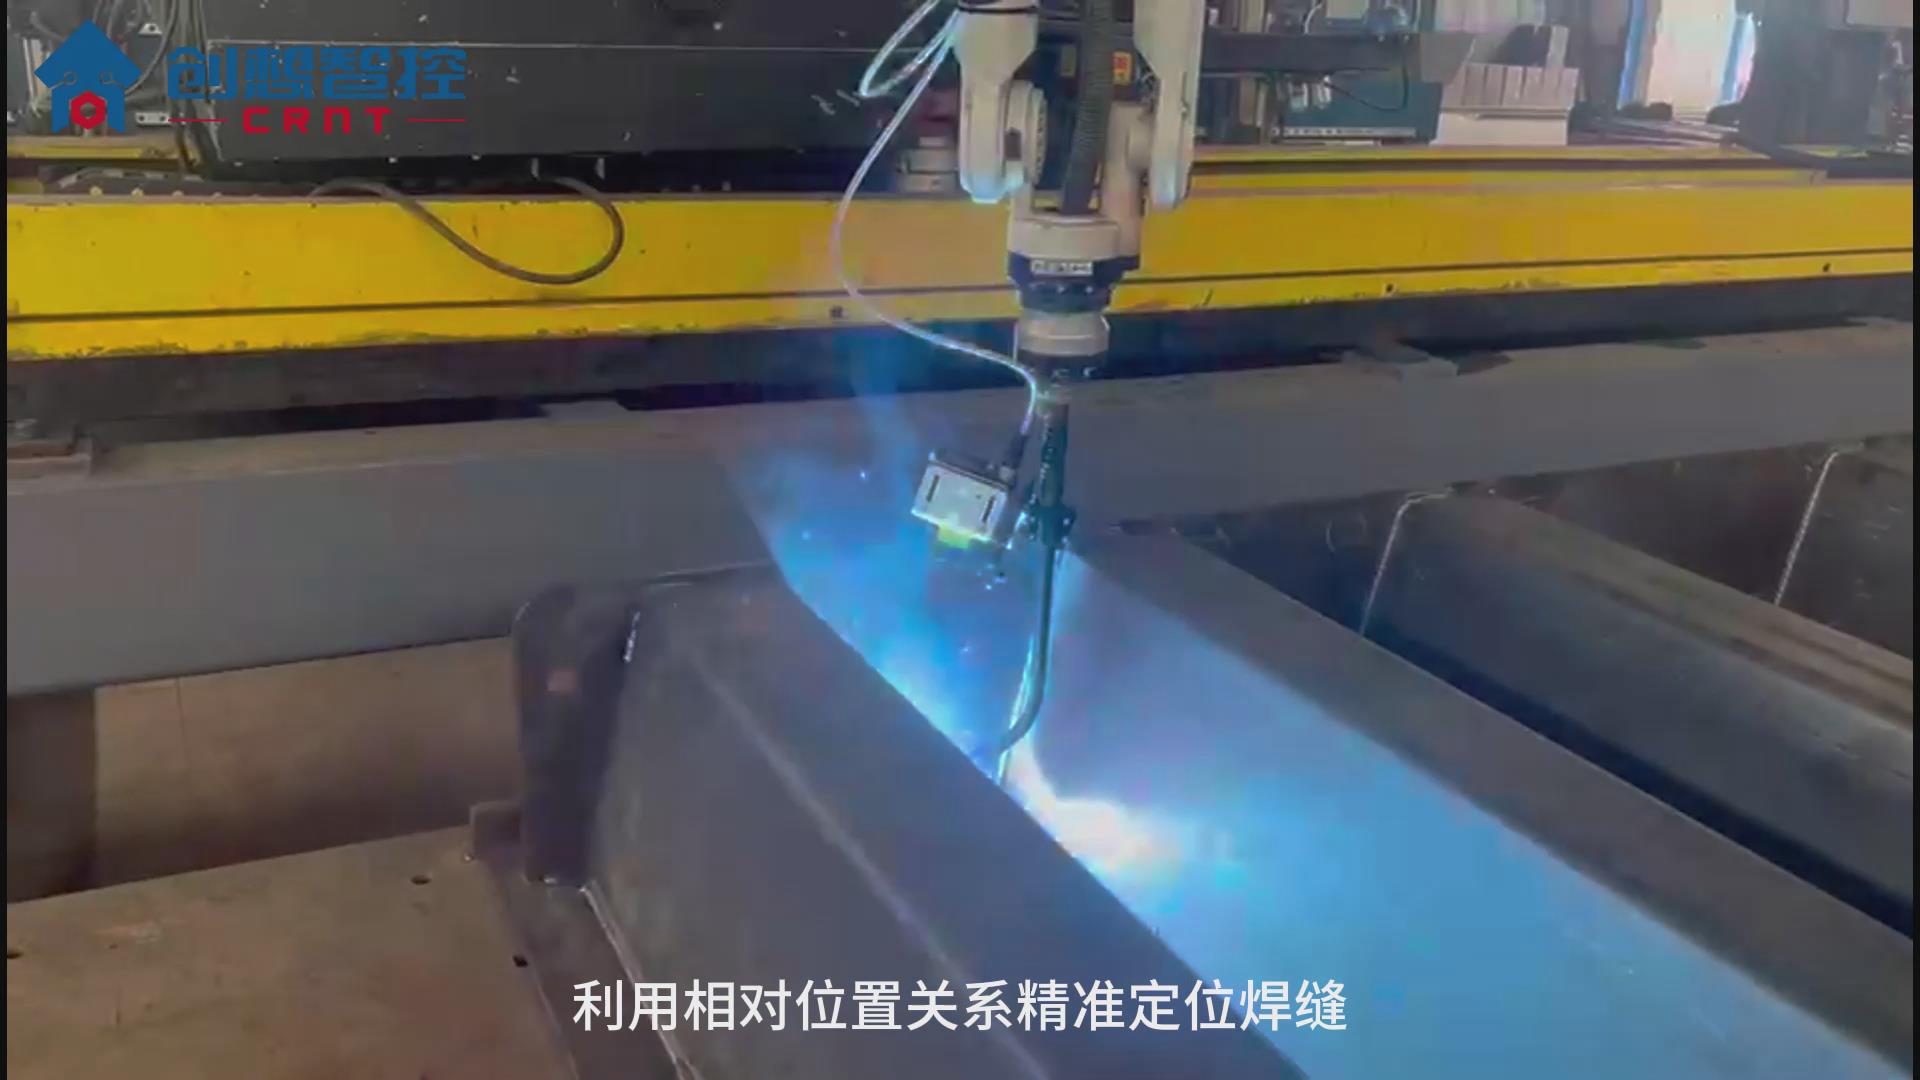 创想焊缝跟踪系统适配研华宝元机器人自动化焊接汽车衡的应用